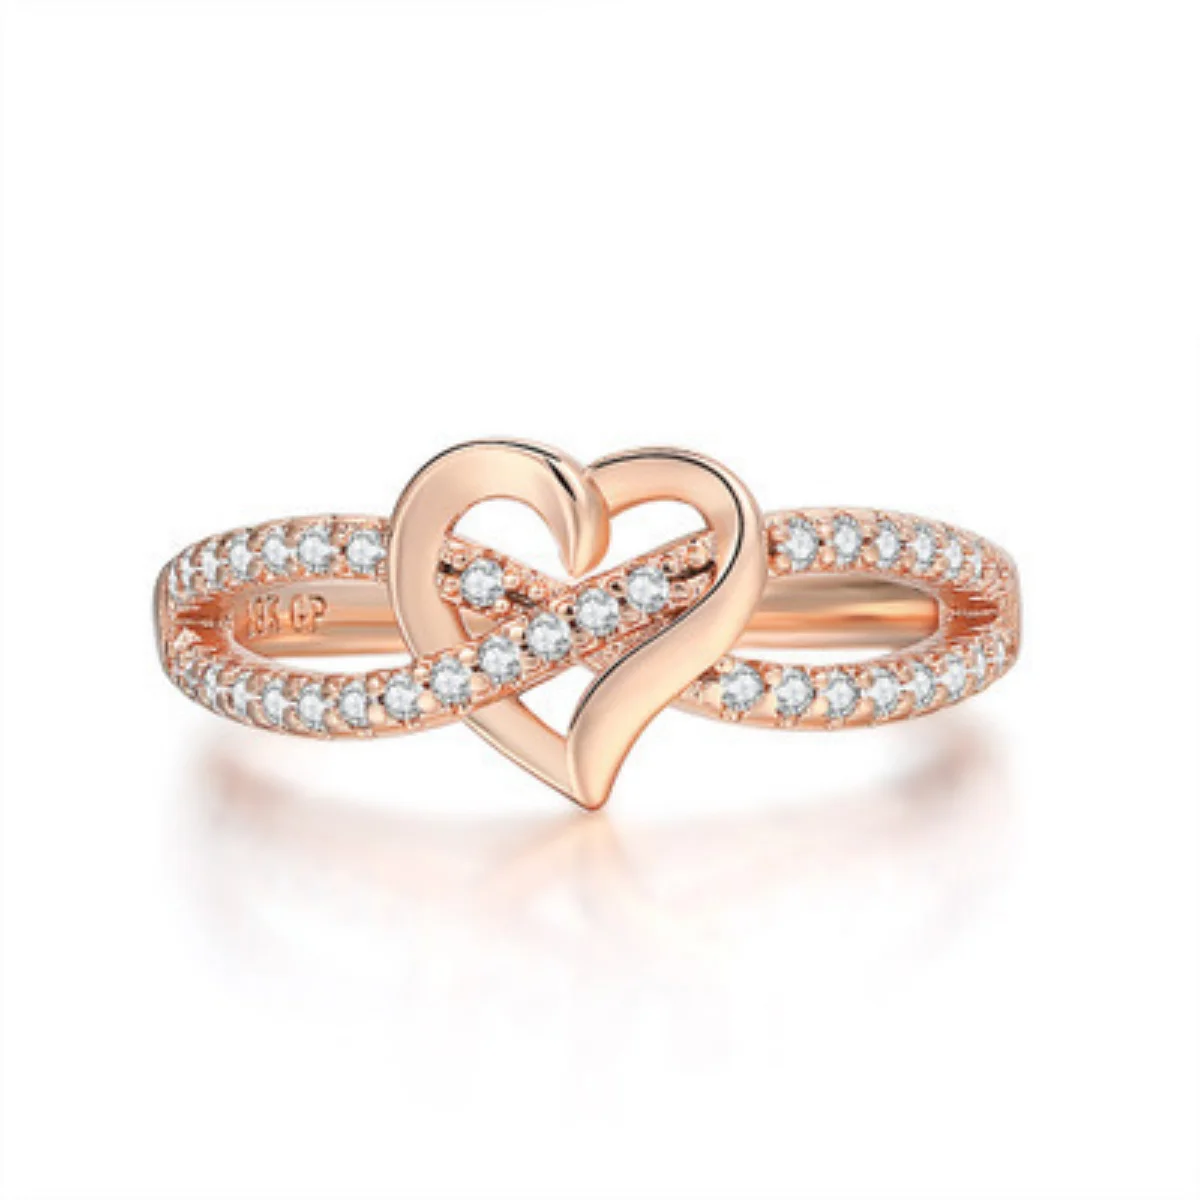 

Модное кольцо в форме сердца с бриллиантами, простое кольцо для женщин, 1 доллар, почтовые расходы, оптовая продажа, по самой низкой цене, возьмите большие заказы